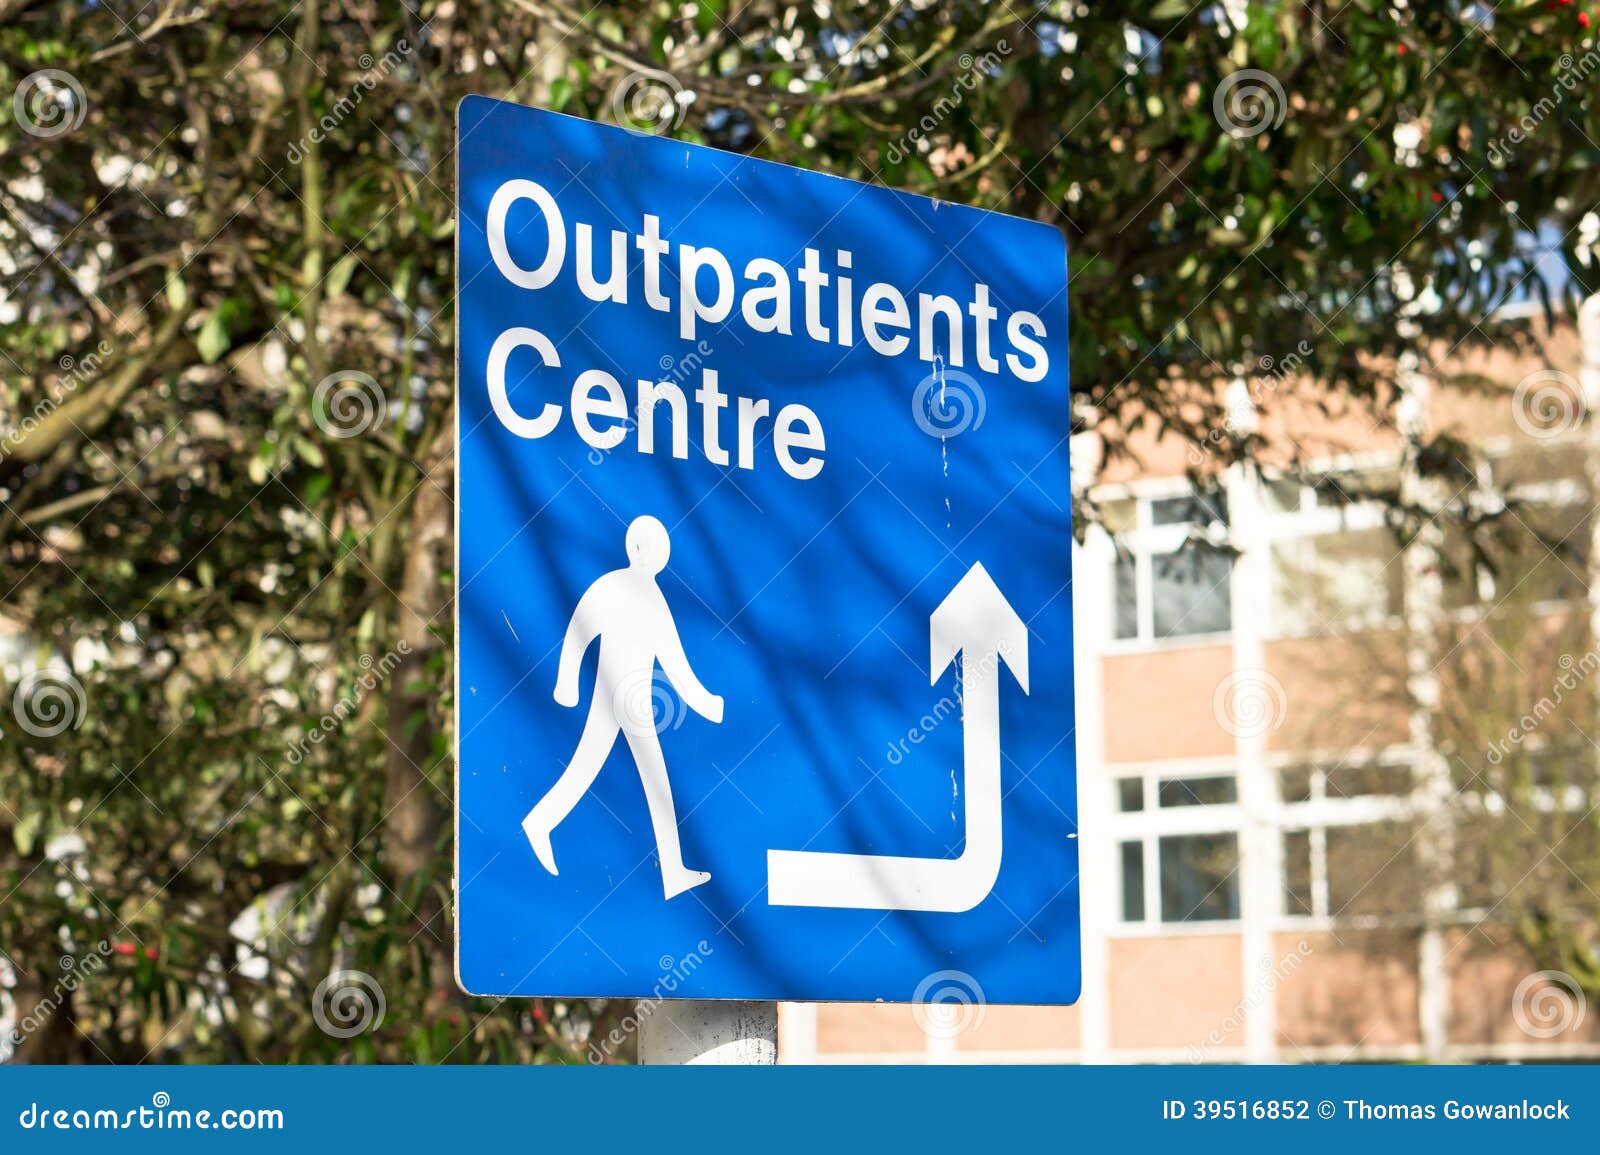 outpatients centre